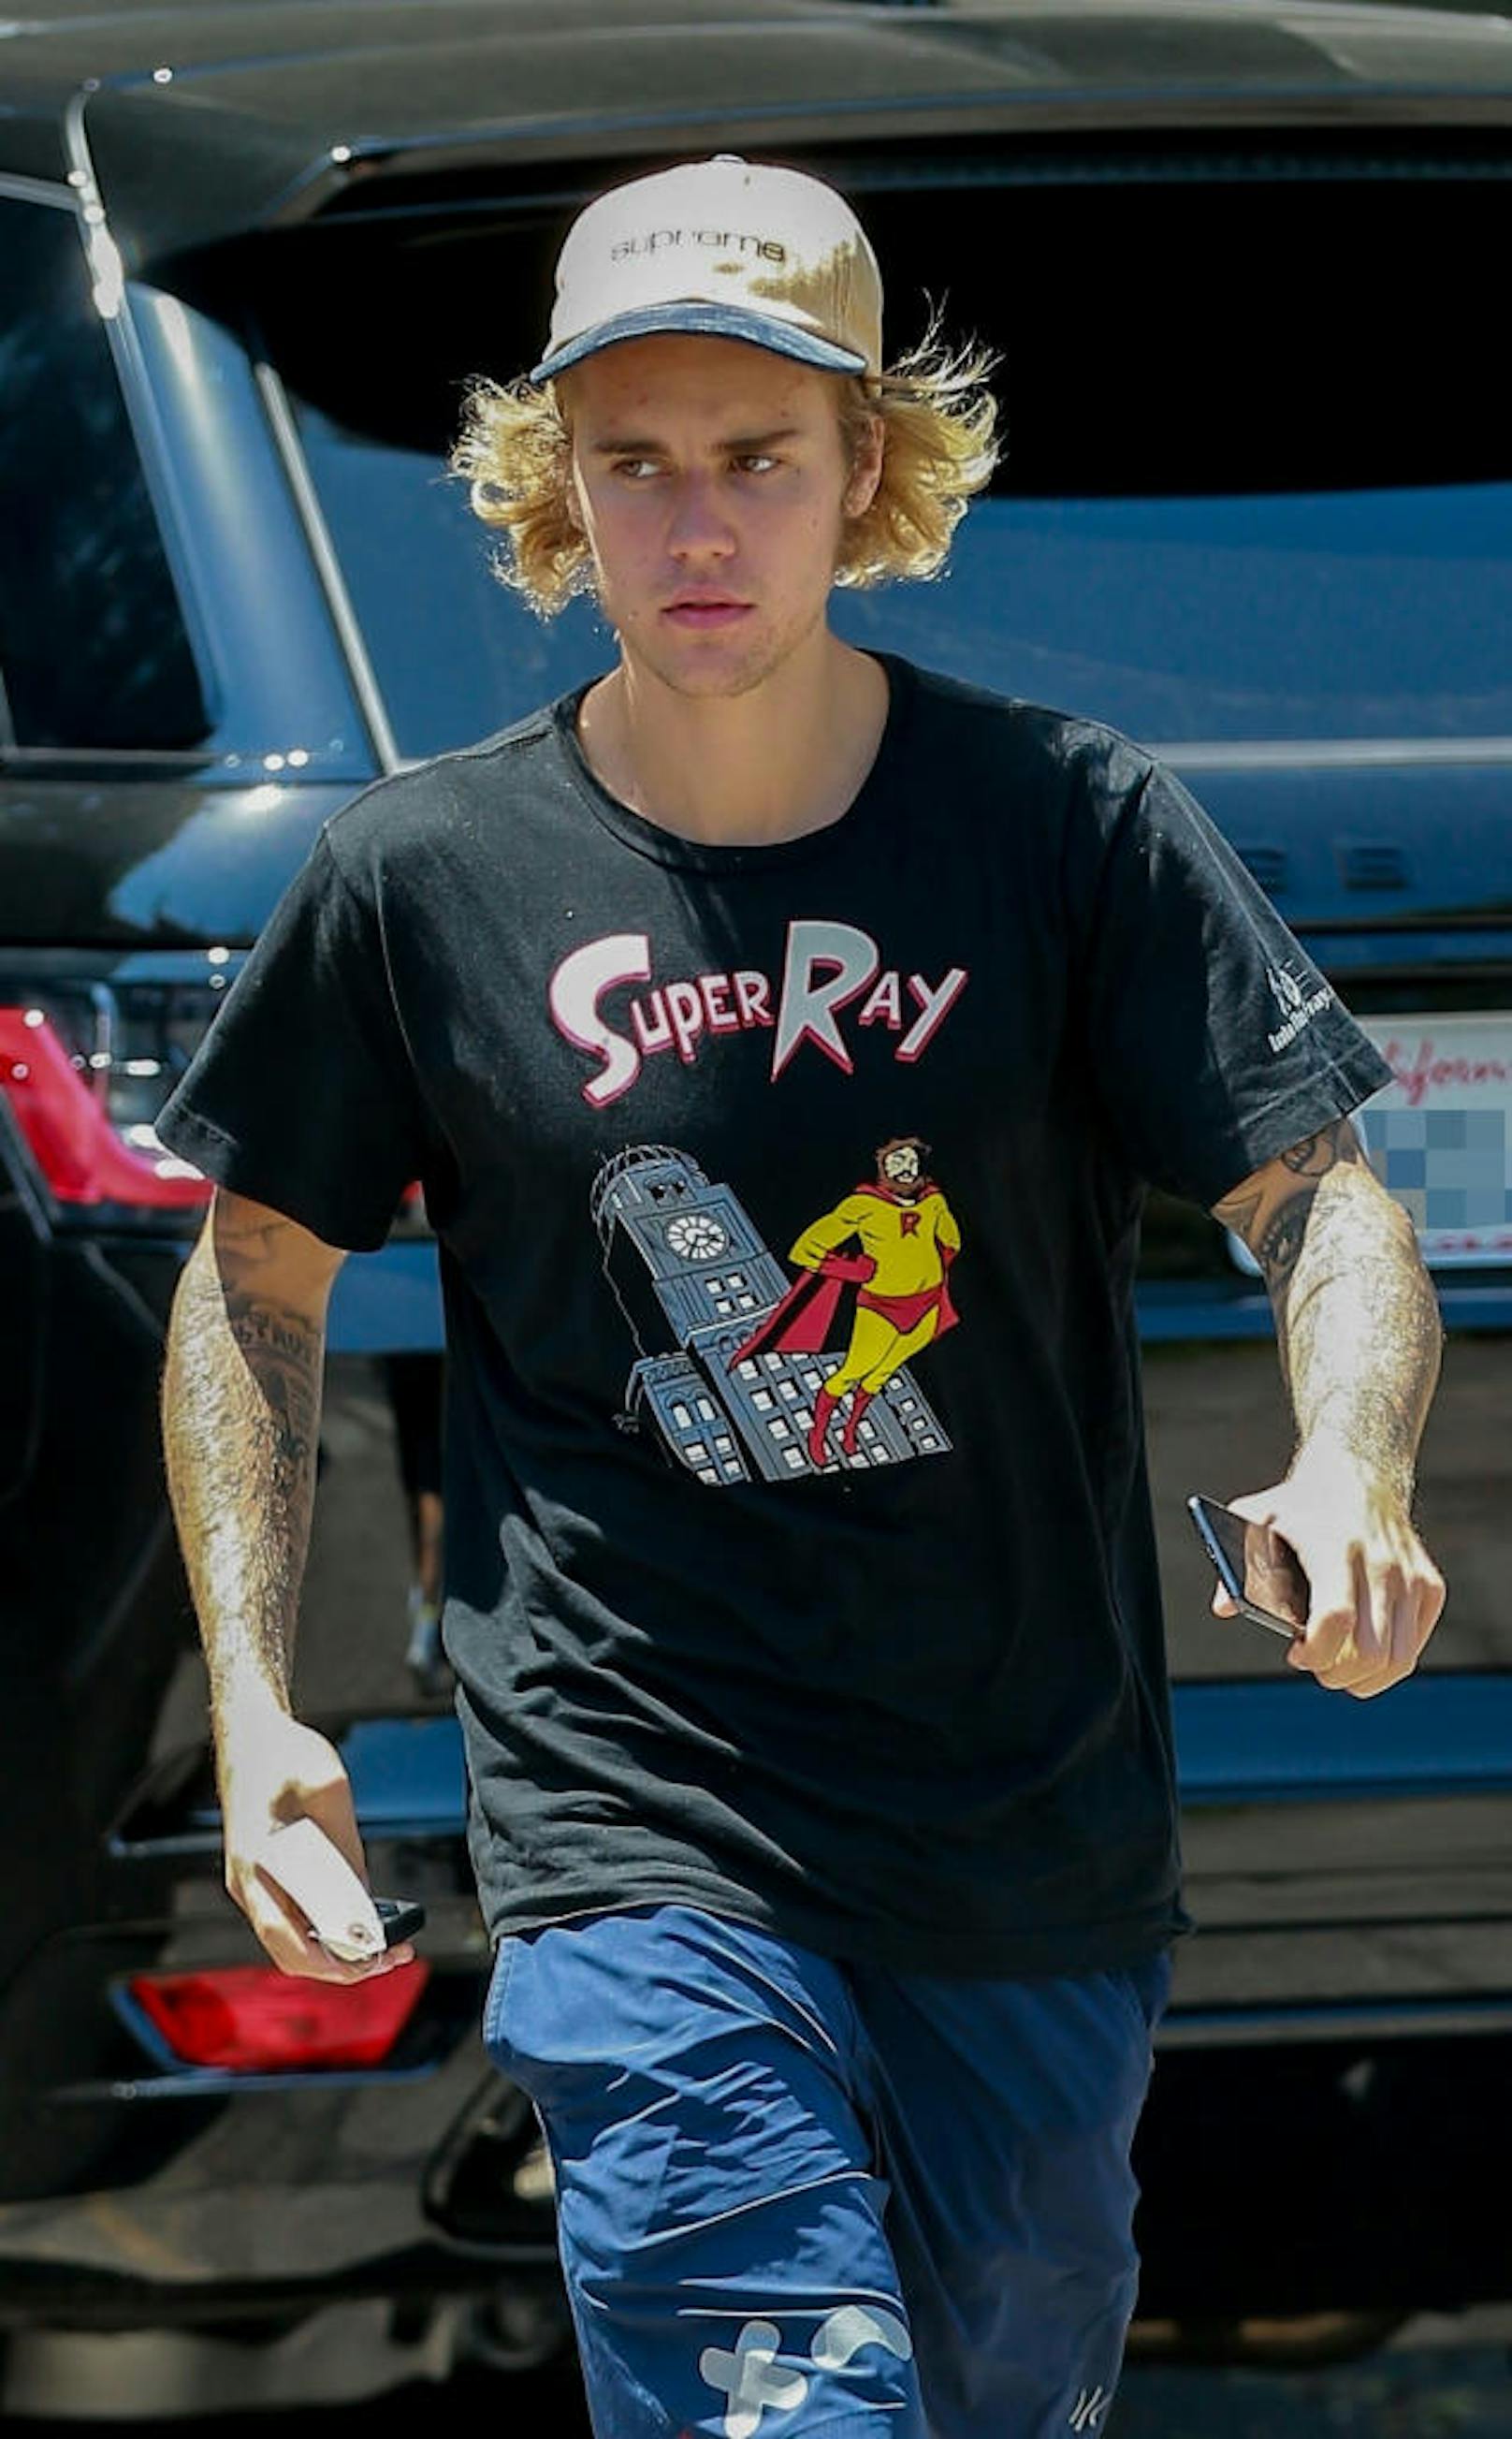 Justin Bieber hilft einem Obdachlosen